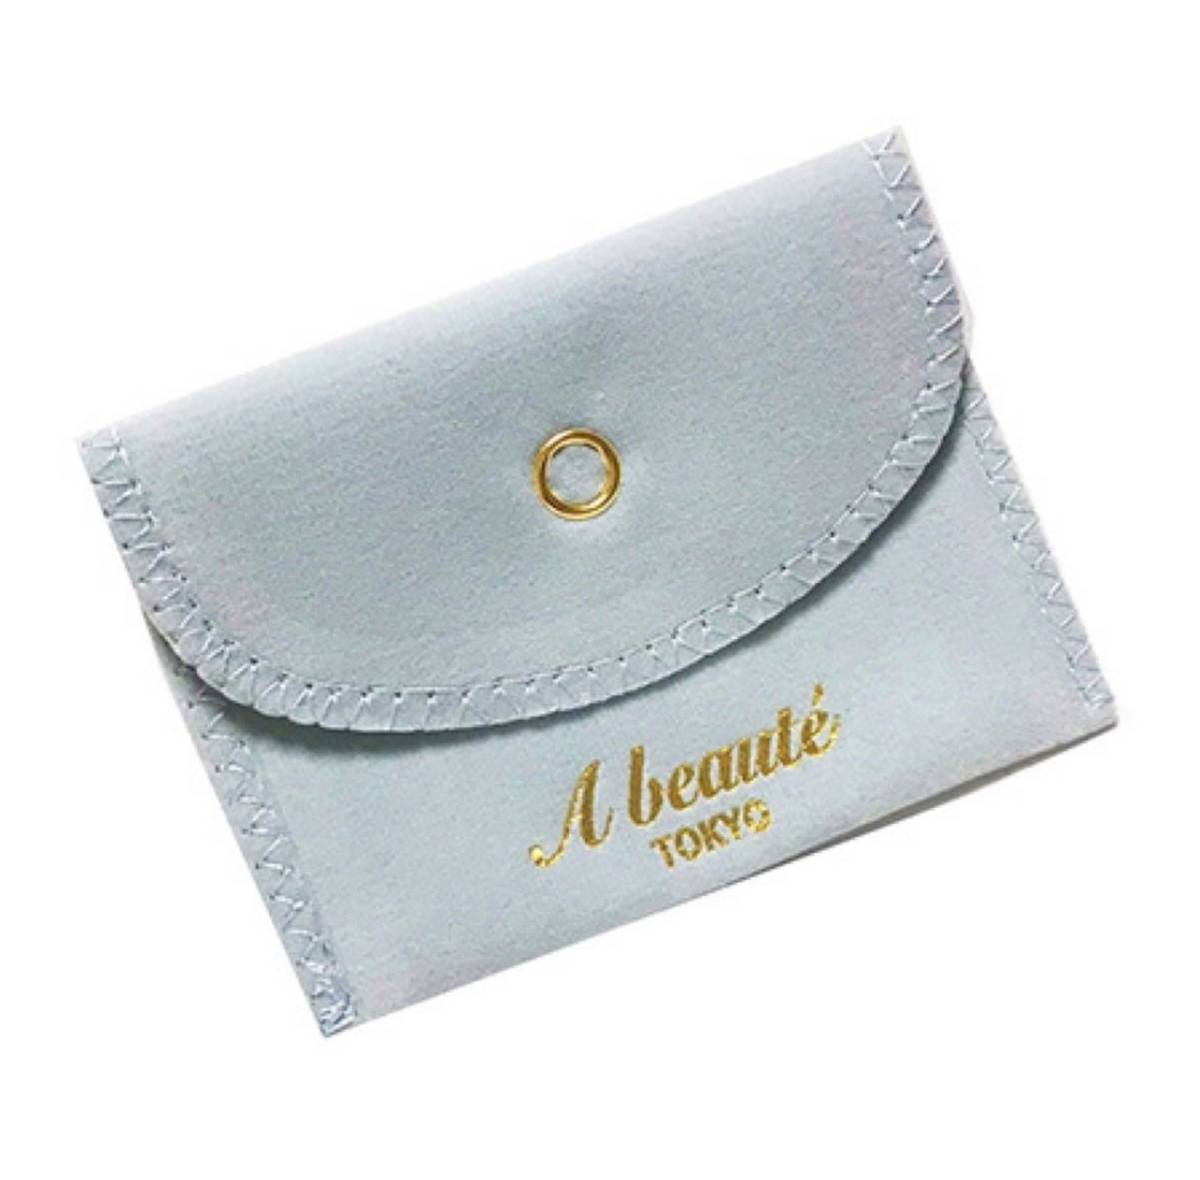  новый товар * блеск гарантия дизайн обруч серьги SONA бриллиант Gold * ювелирные изделия сумка письменная гарантия мужской женский кольцо подарок 